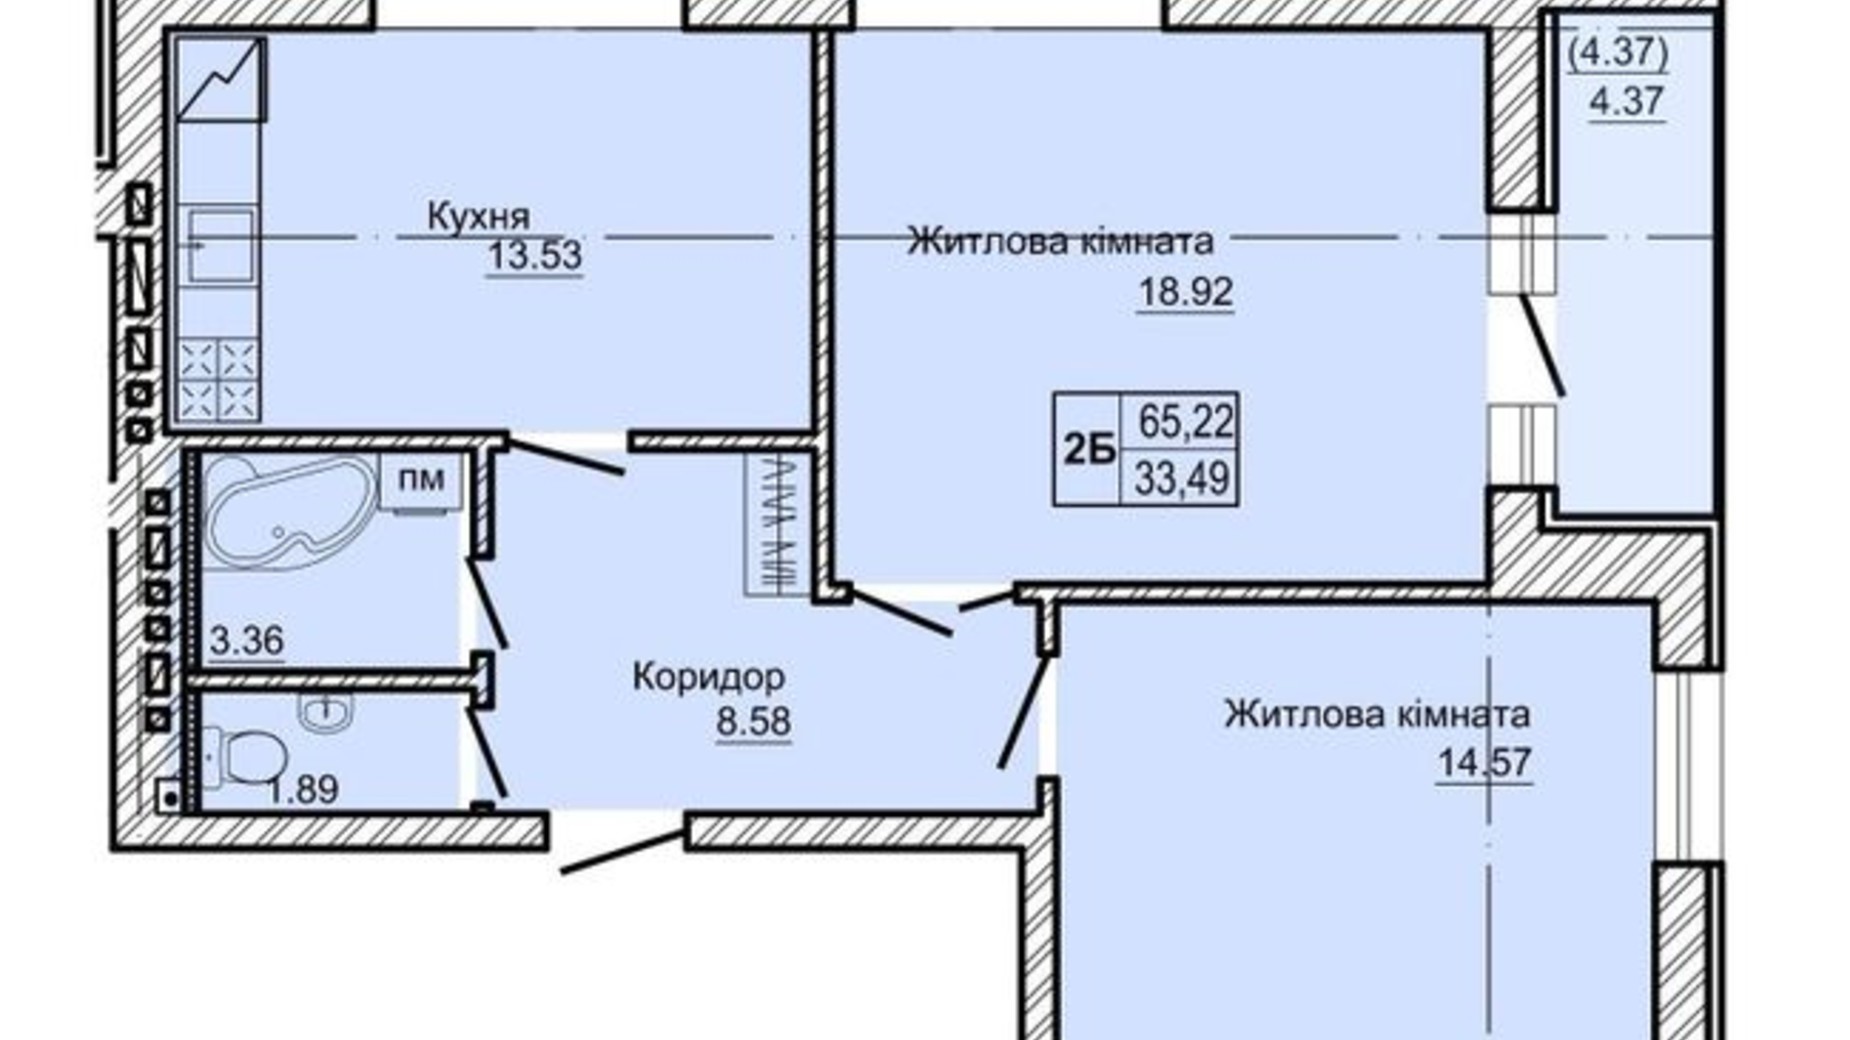 Планировка 2-комнатной квартиры в ЖК Новоградский 65.22 м², фото 355474